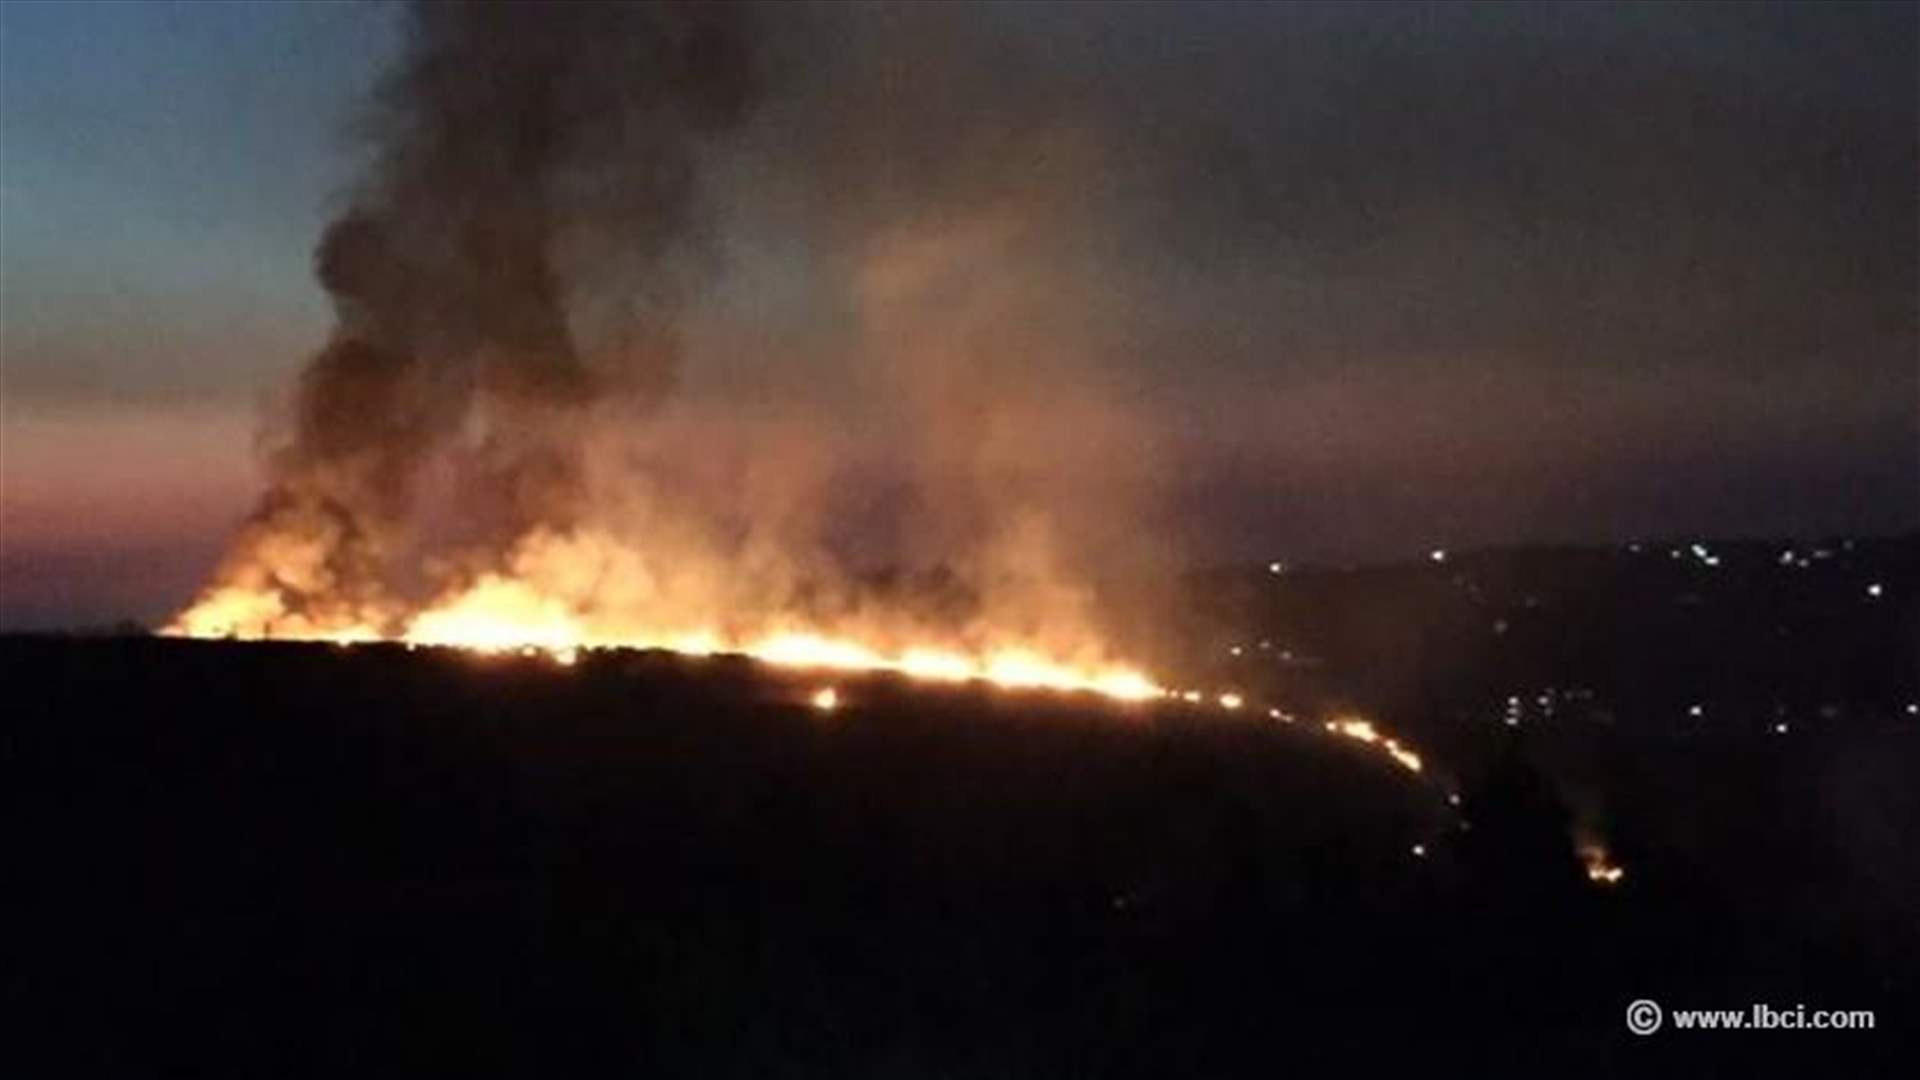  بالصور: حريق كبير في عكار والاهالي يناشدون عبر الـ LBCI ارسال المزيد من الدعم